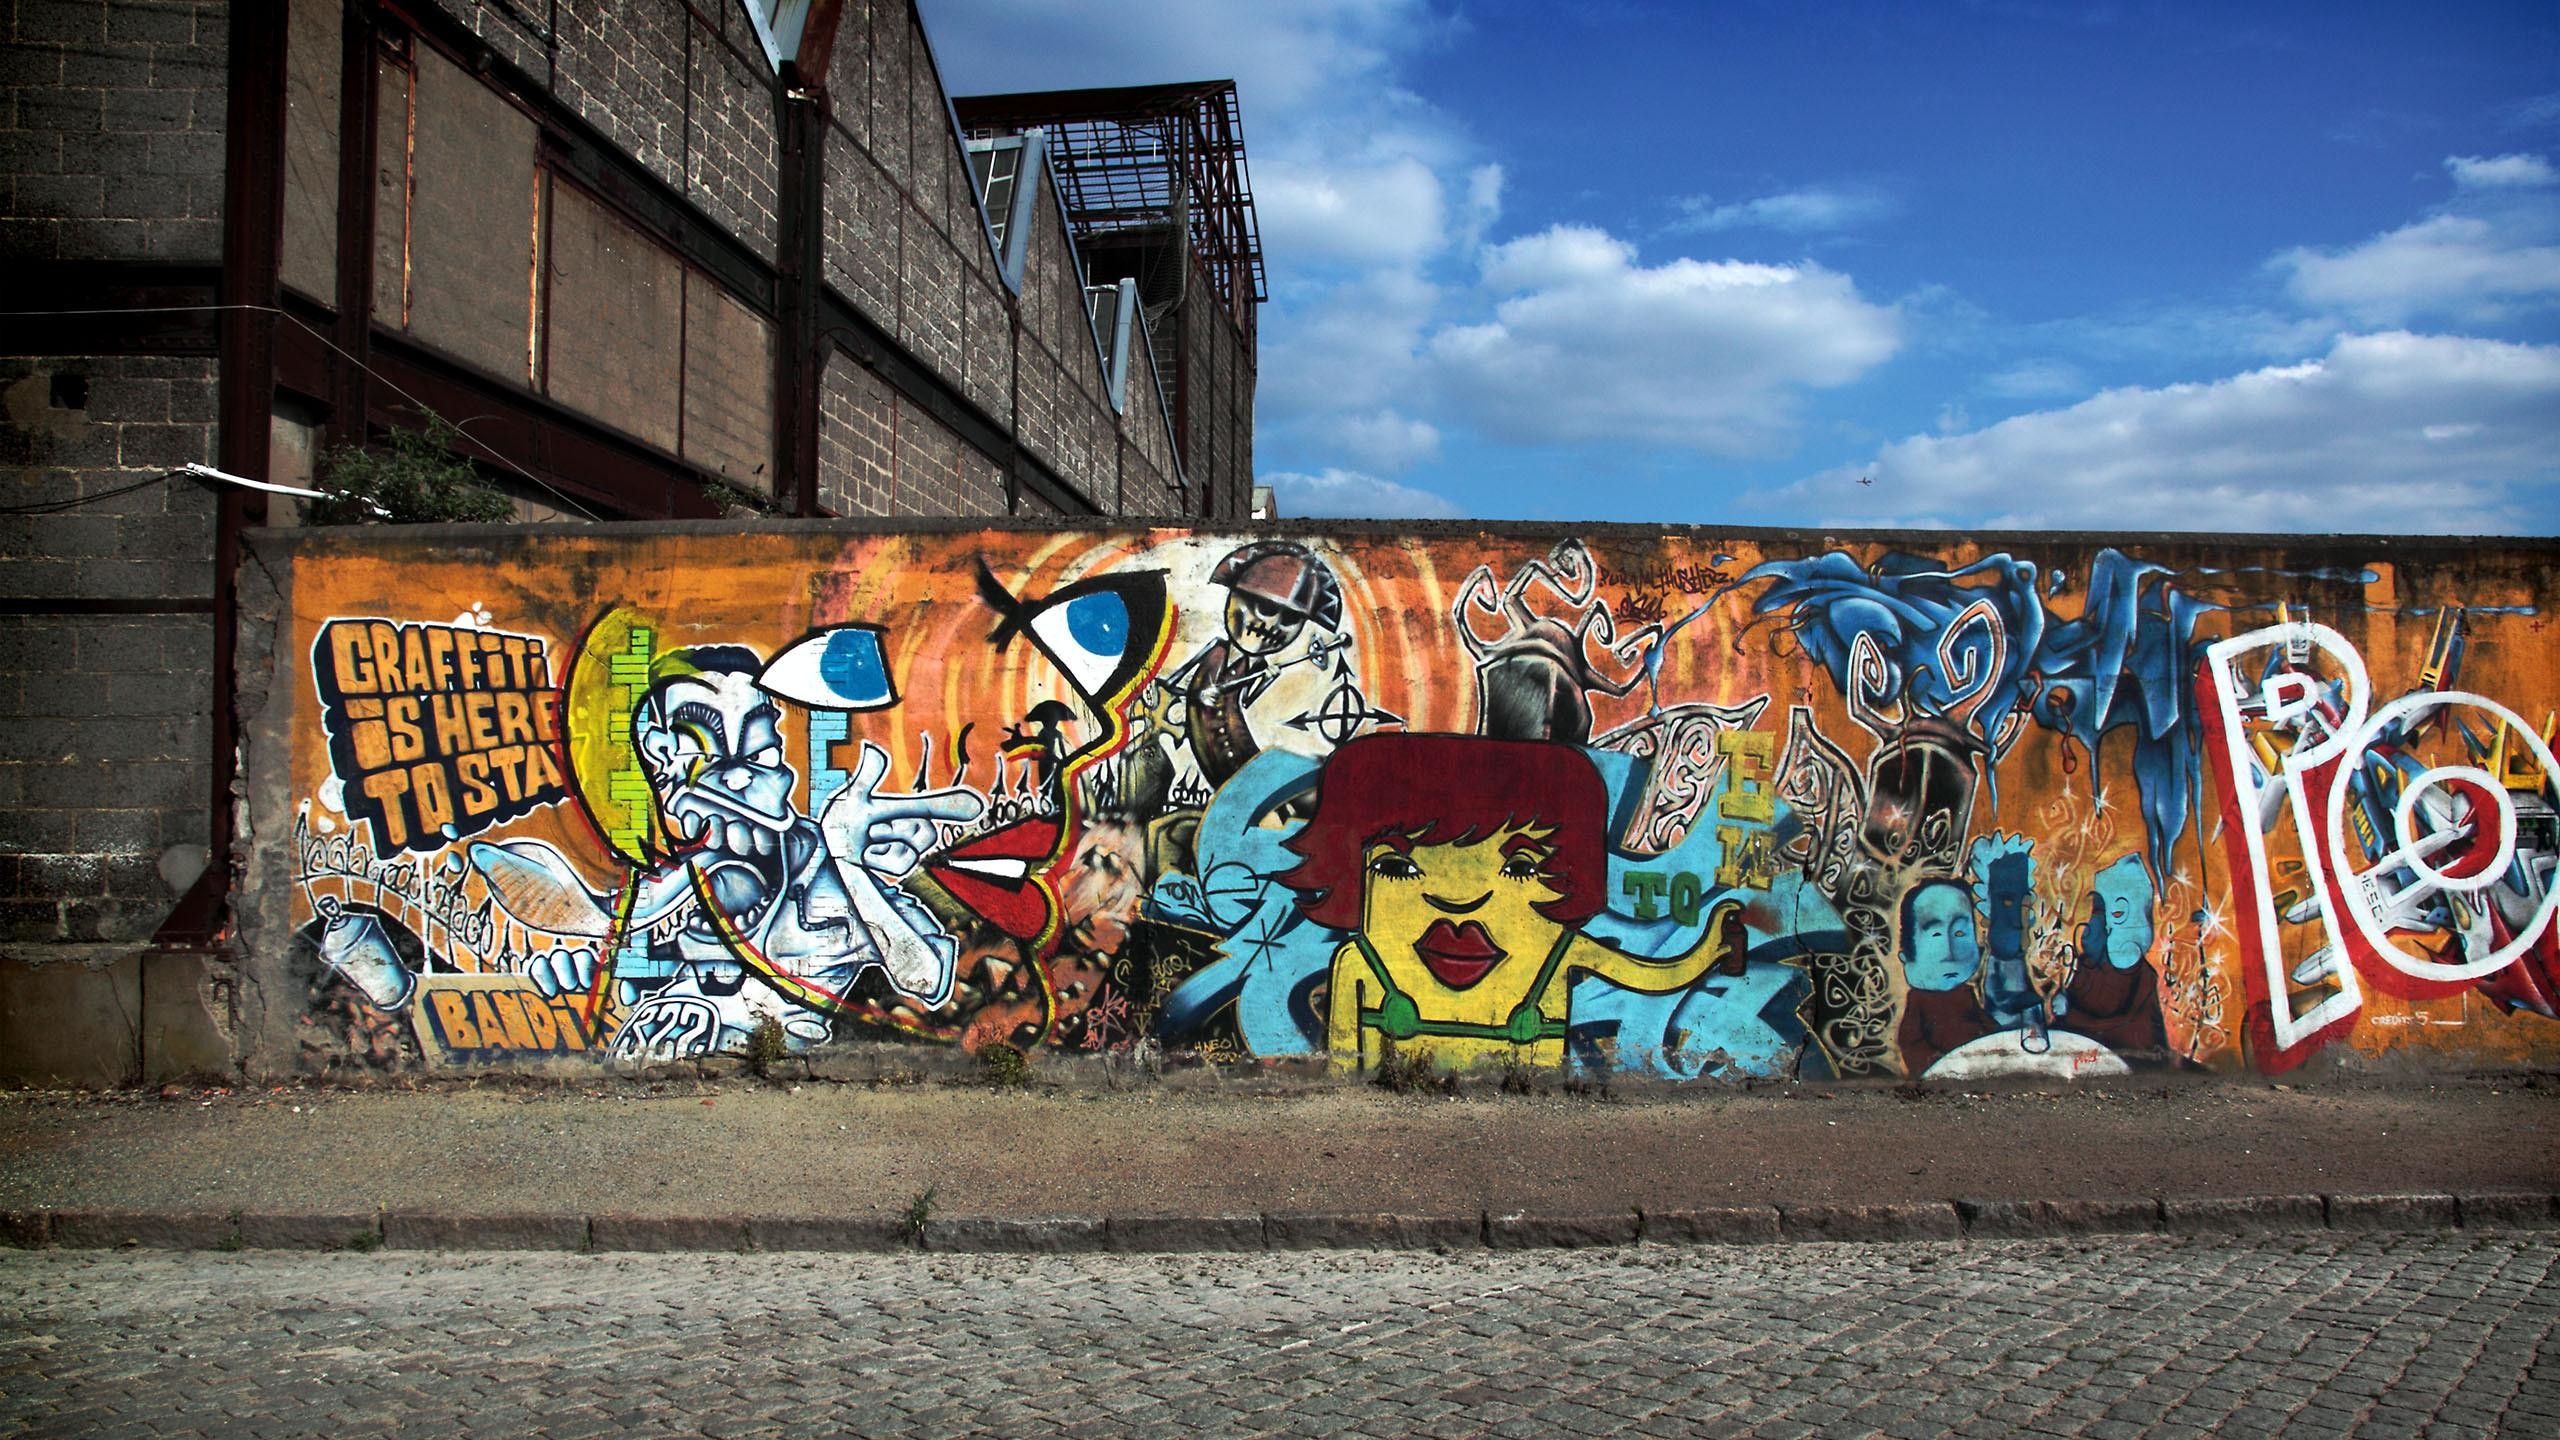 2560x1440 Wallpaper Graffiti Road Sky City